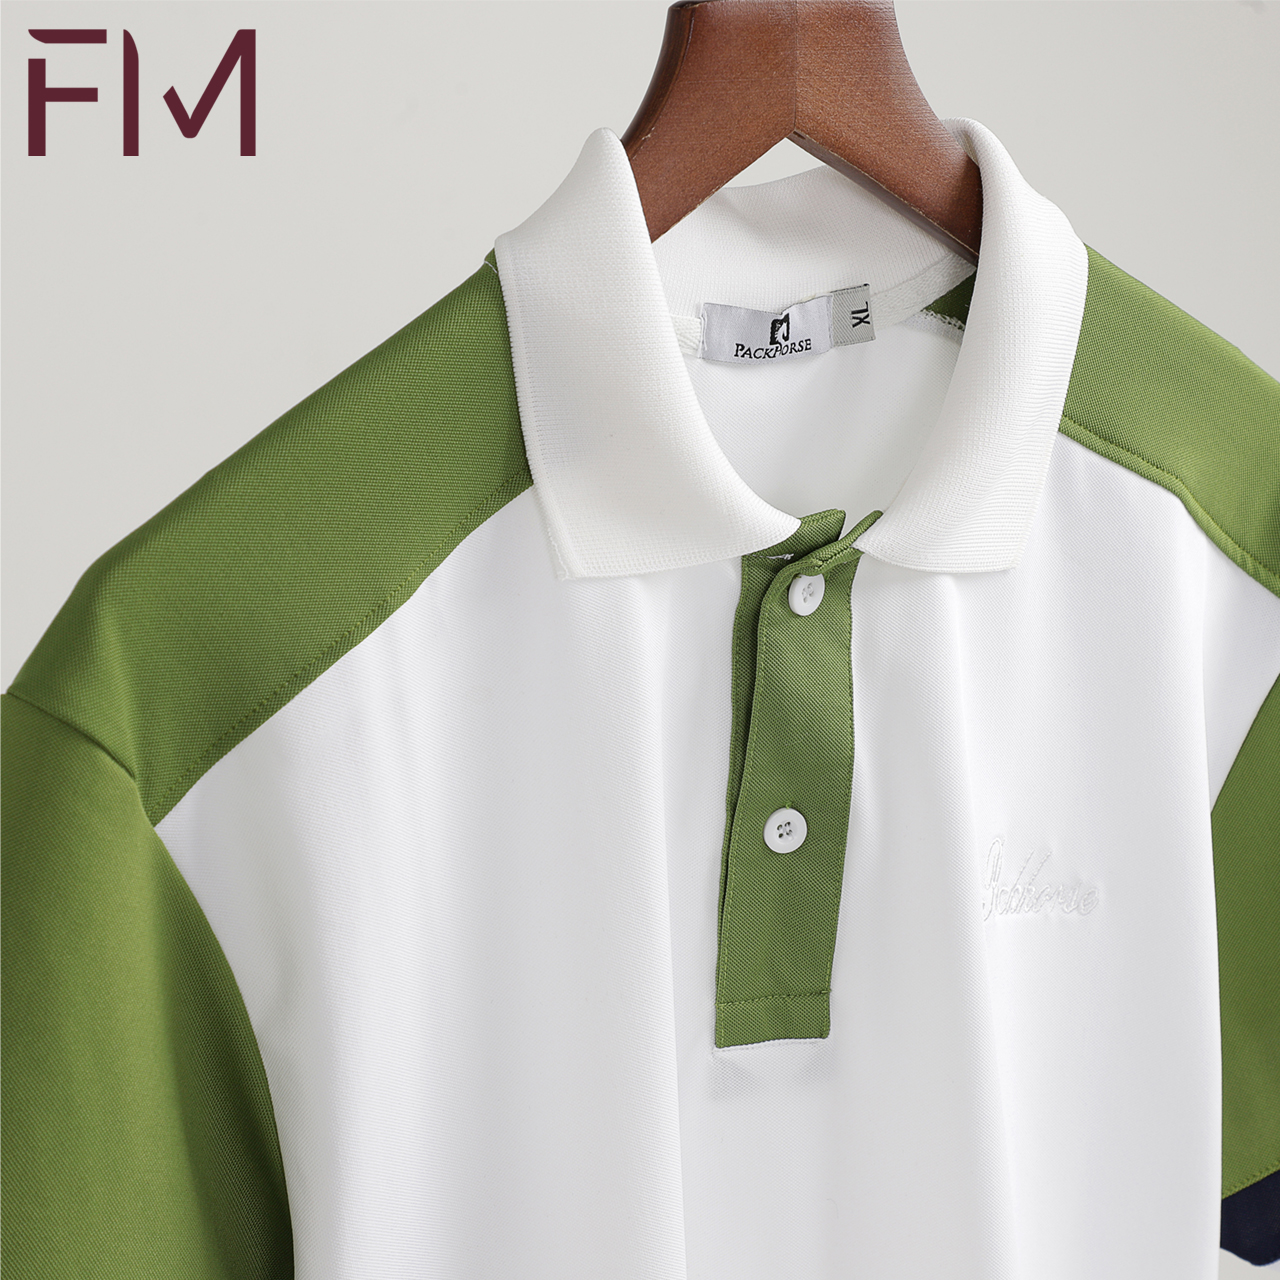 Áo thun nam cổ bẻ, phong cách trưởng thành, chất liệu co giãn dễ dàng vận động - FORMEN SHOP - FMPS164